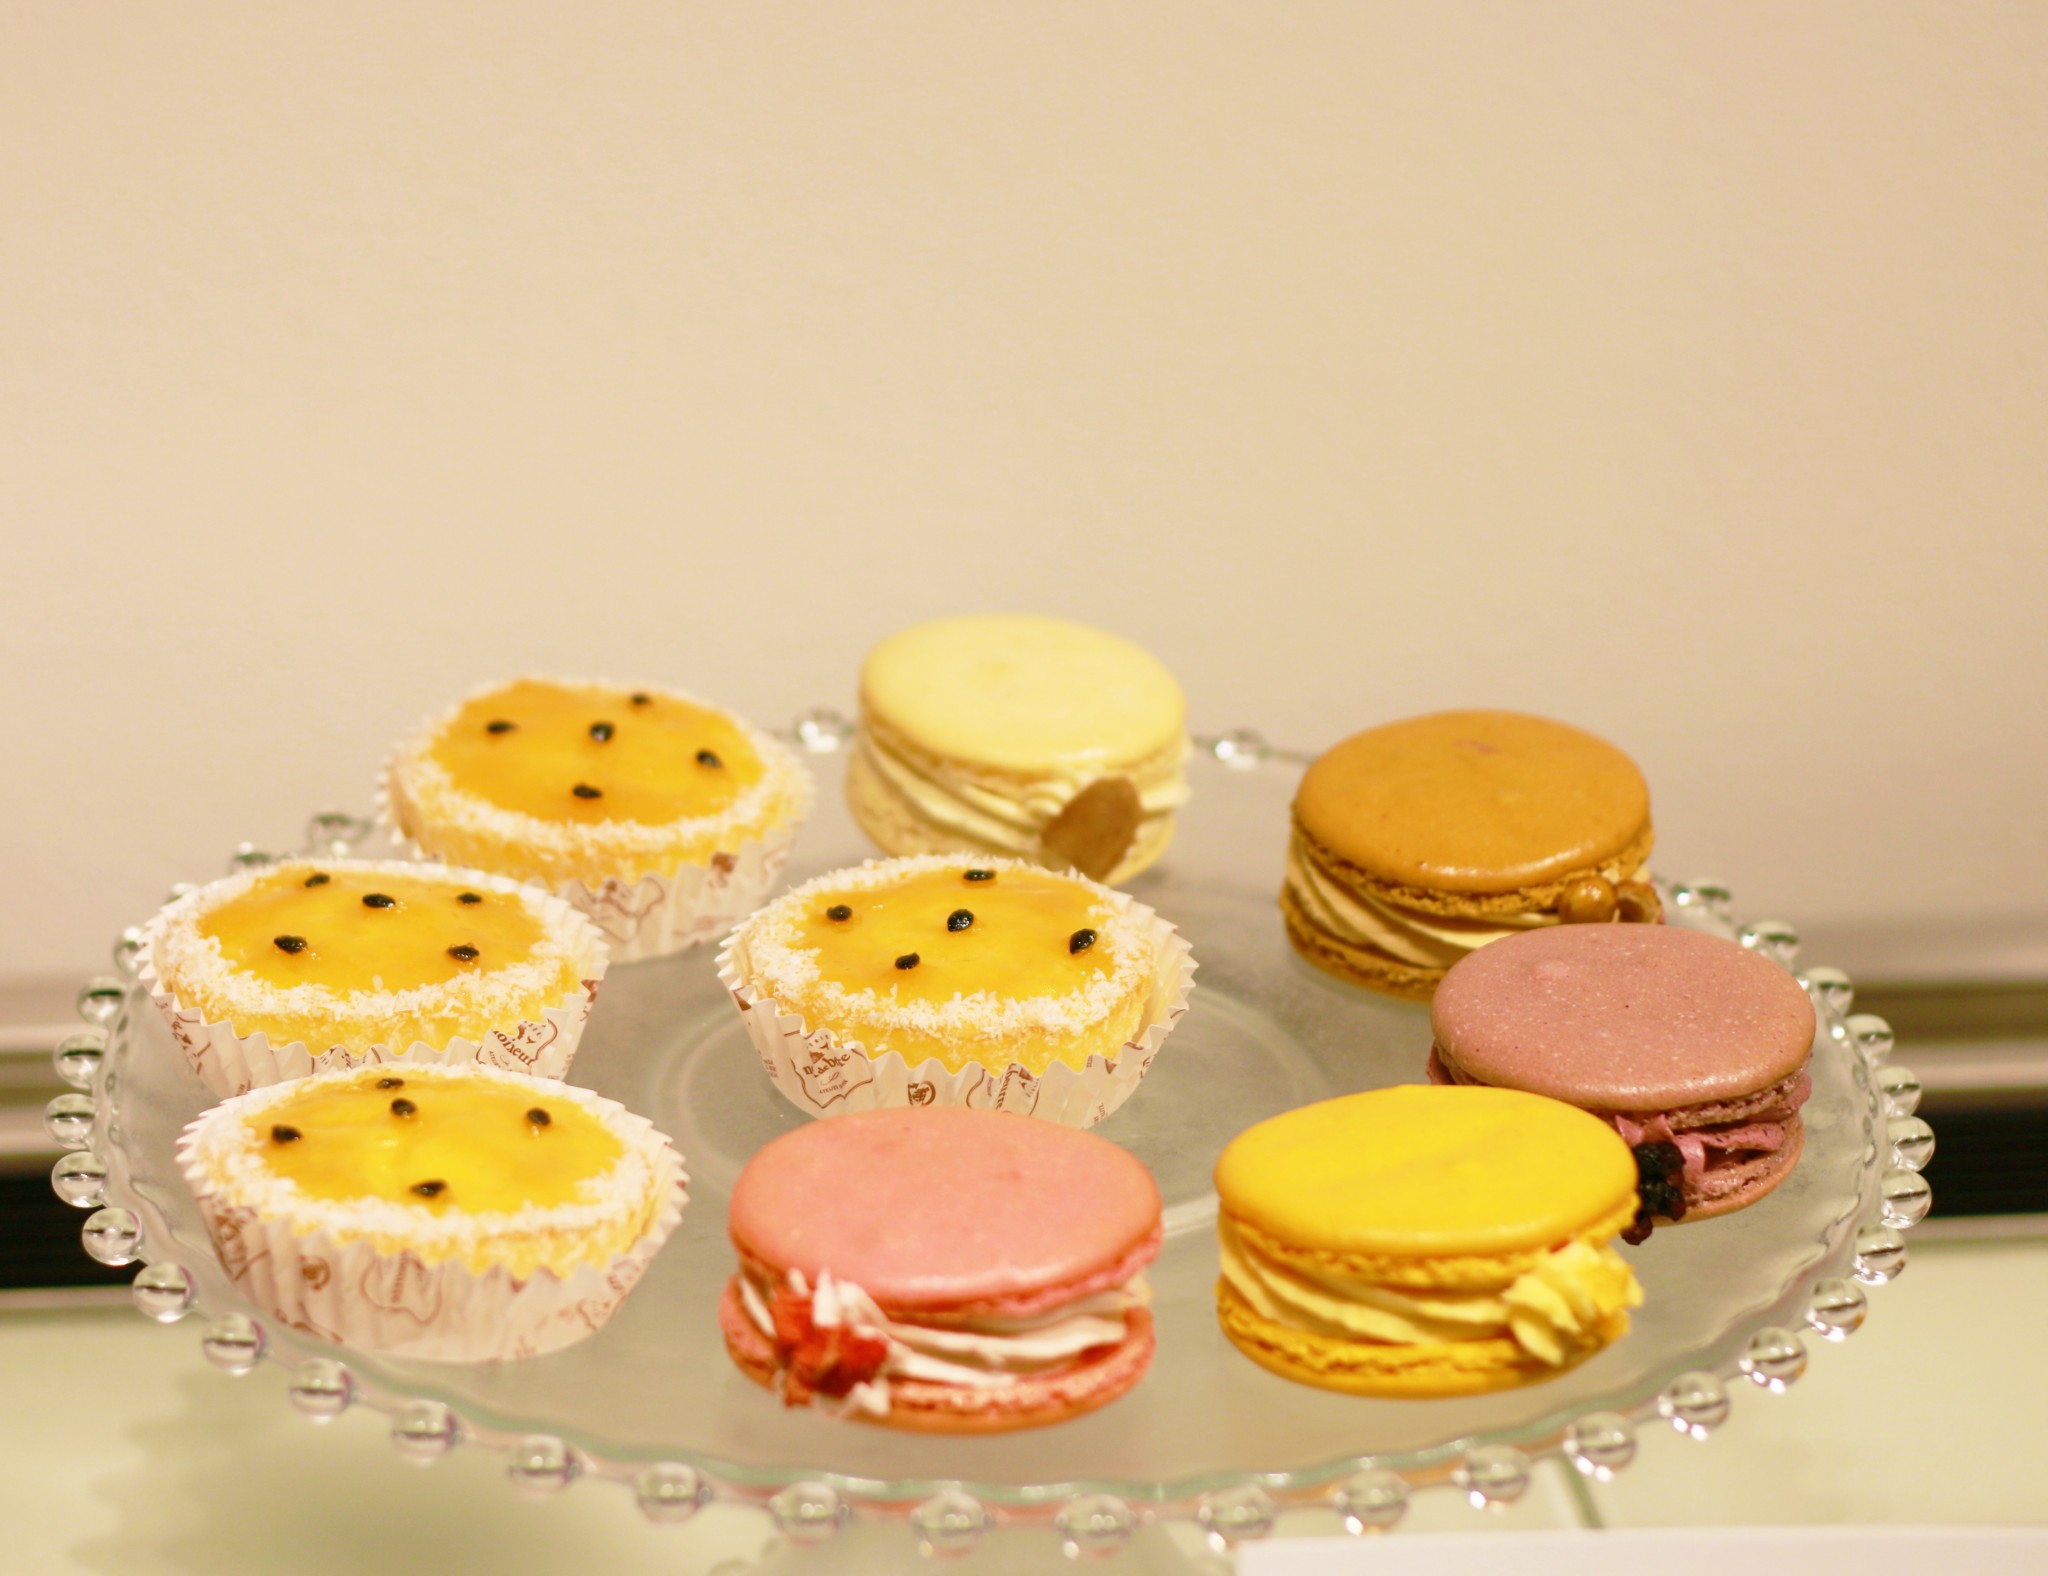 「パッションフルーツのケーキ」（写真左側4つ）カップケーキのような、可愛らしい見た目にも注目。1個360円